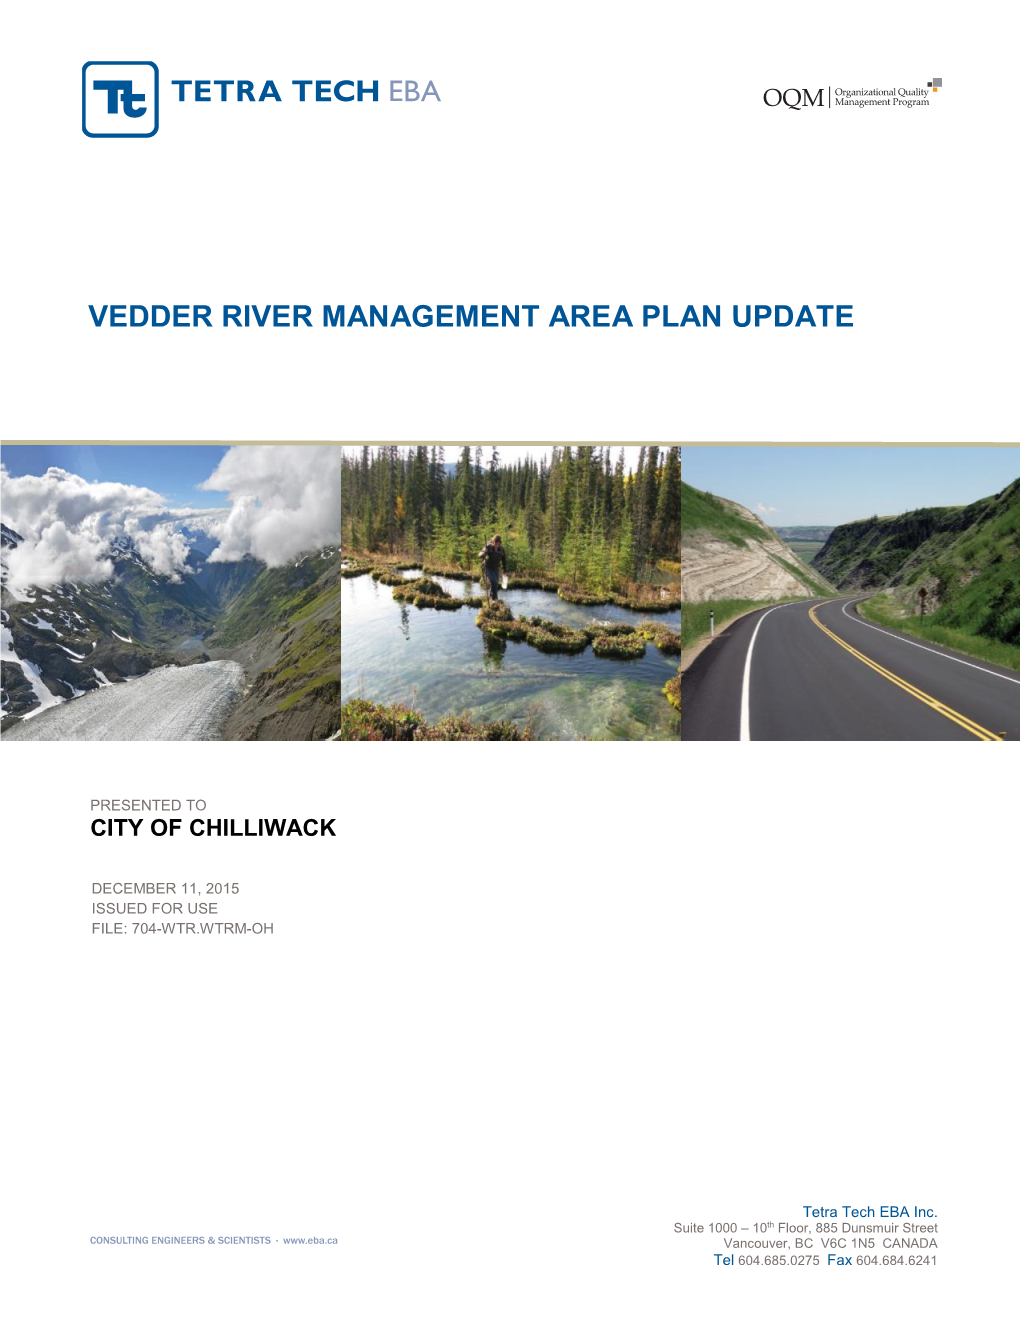 Vedder River Management Area Plan Update